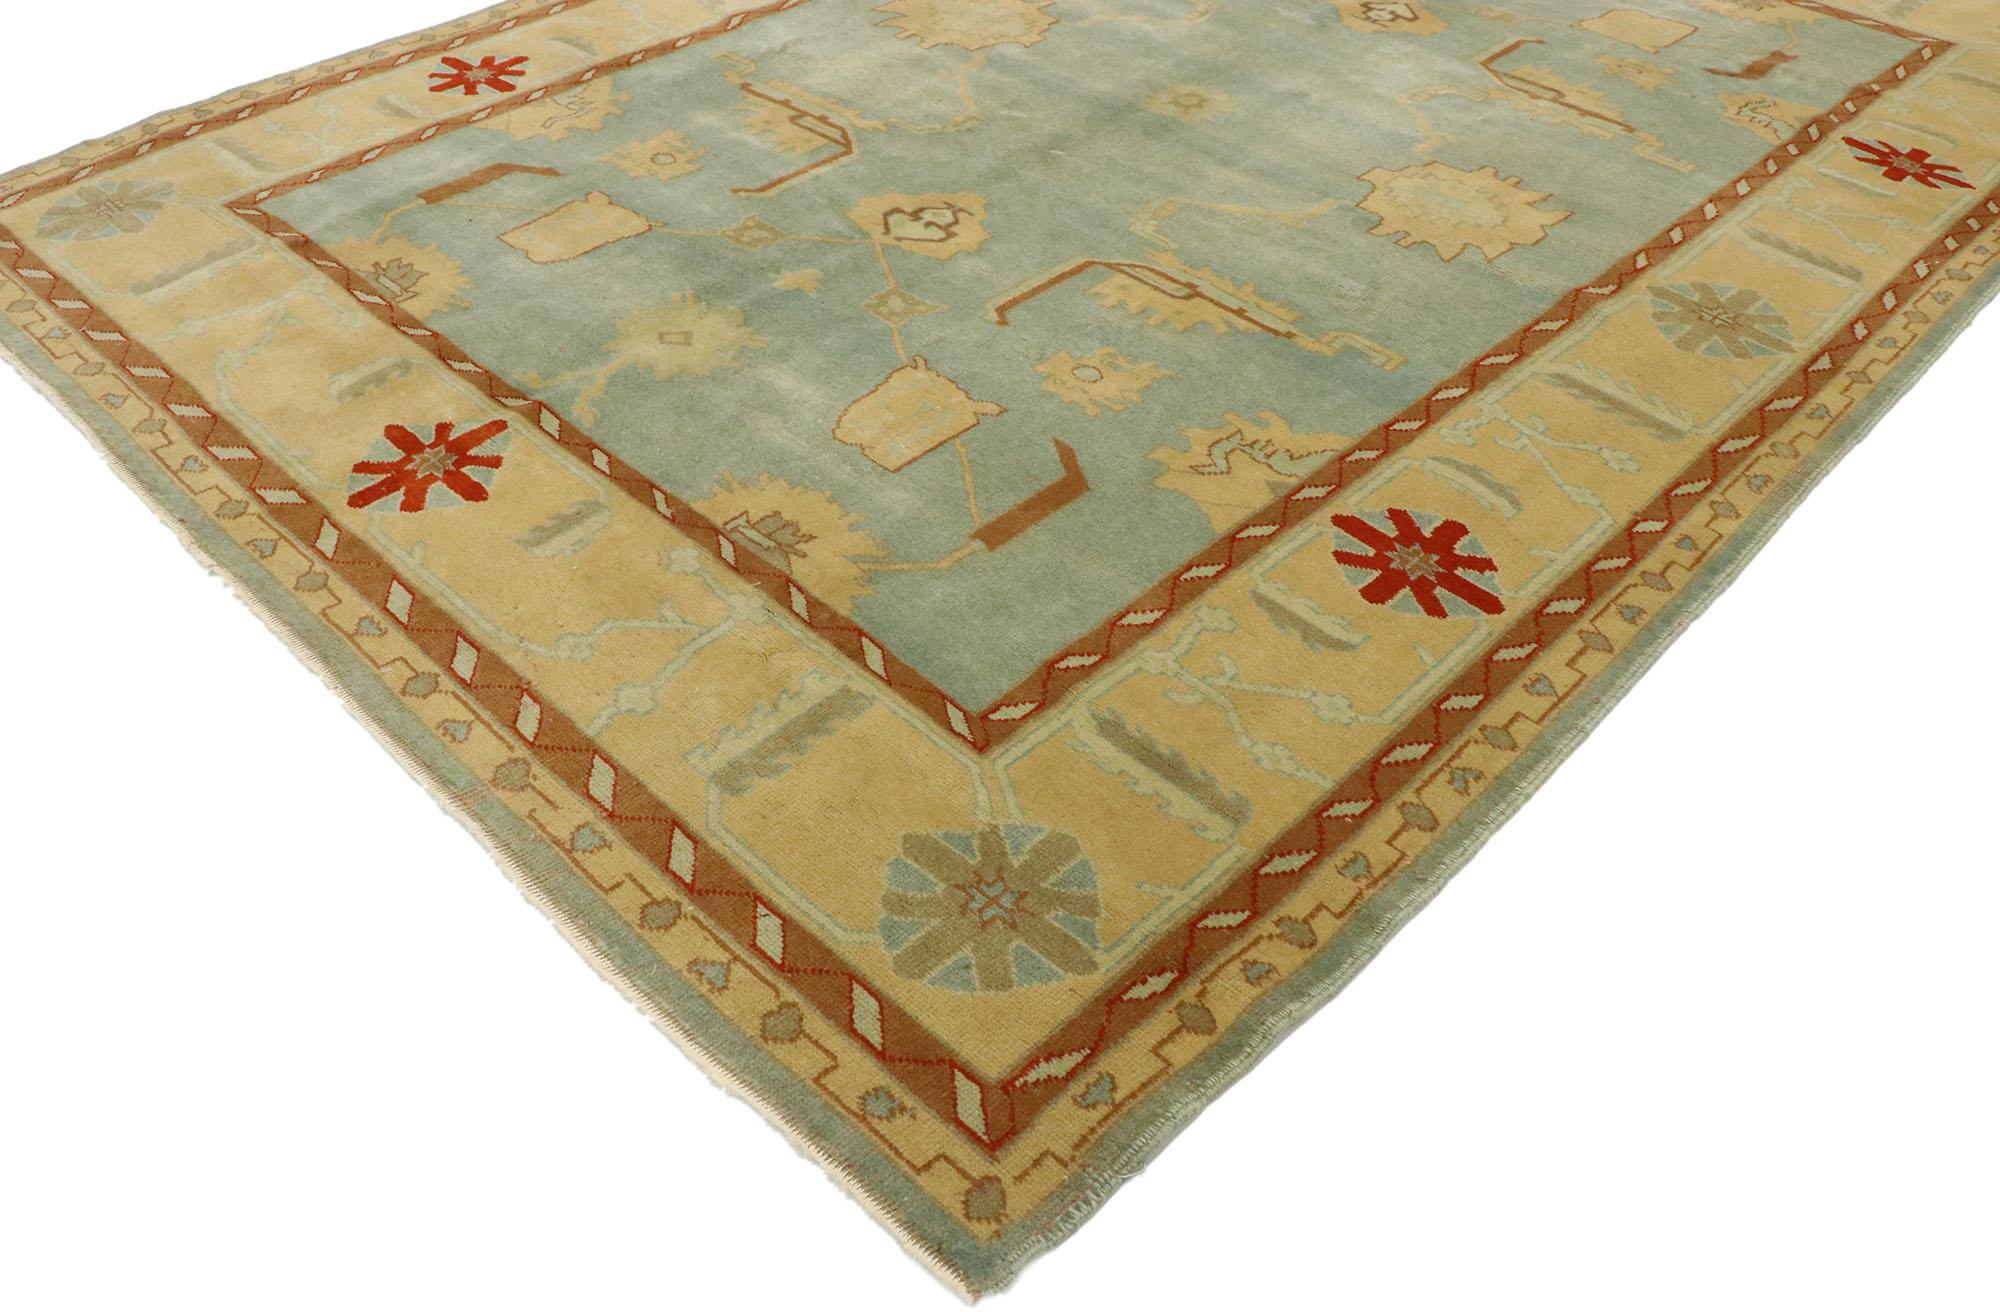 53080, tapis turc Oushak vintage de style Arts & Crafts. Imprégné d'éléments architecturaux de formes naturalistes dans des couleurs inspirées de la terre, ce tapis Oushak turc vintage en laine noué à la main incarne magnifiquement le style Arts &